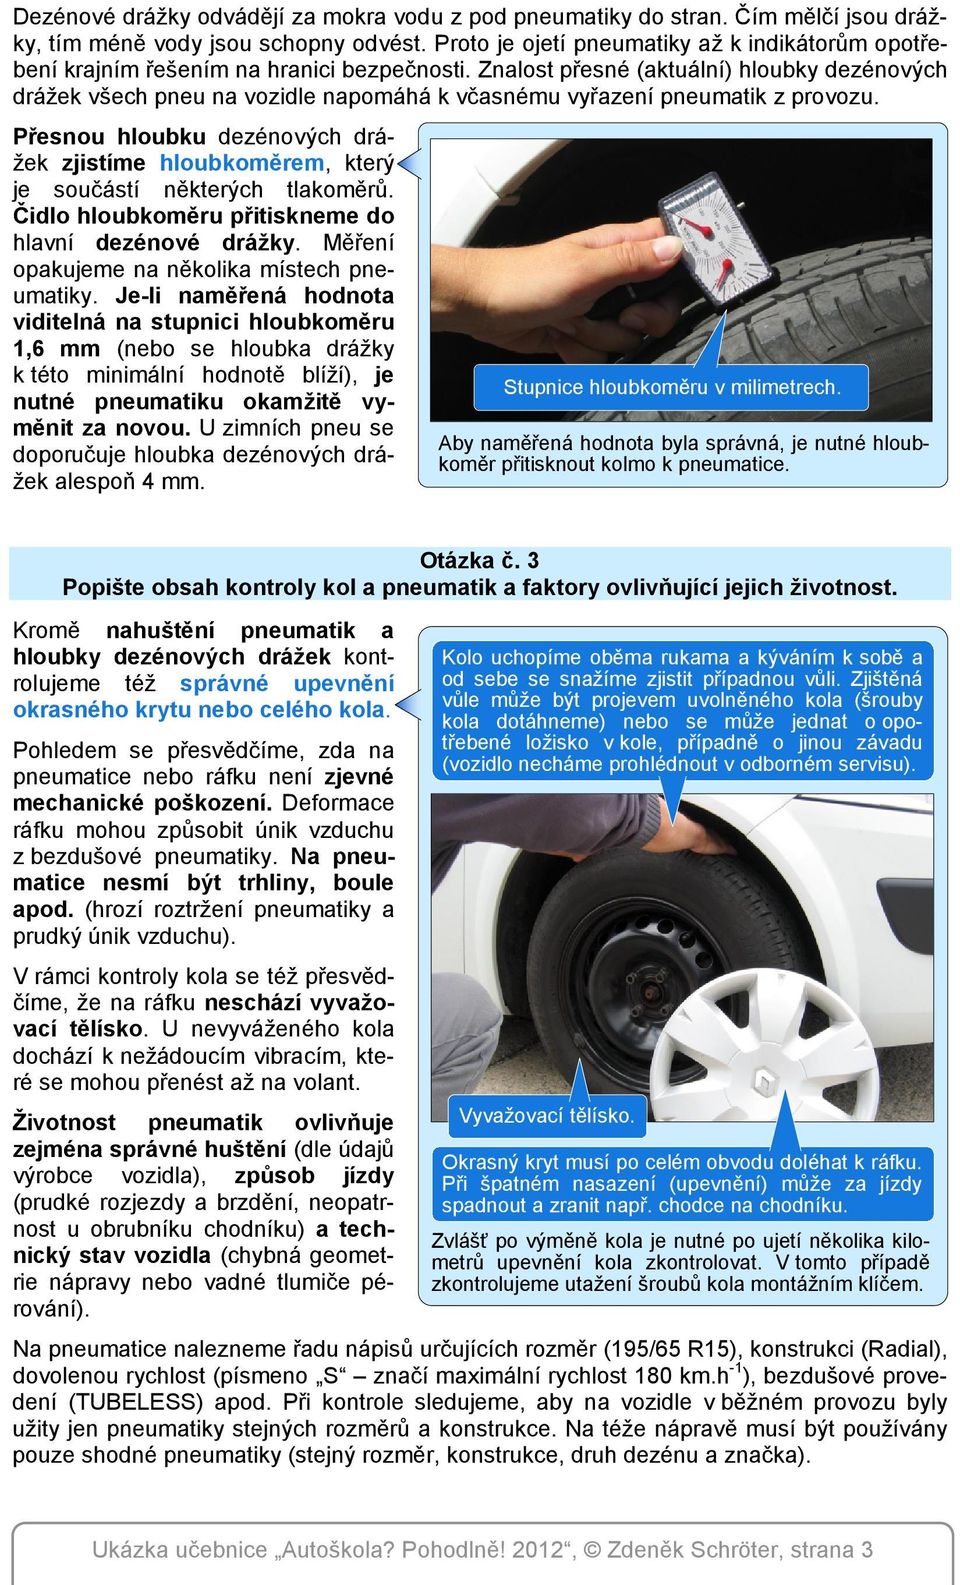 Znalost přesné (aktuální) hloubky dezénových drážek všech pneu na vozidle napomáhá k včasnému vyřazení pneumatik z provozu.